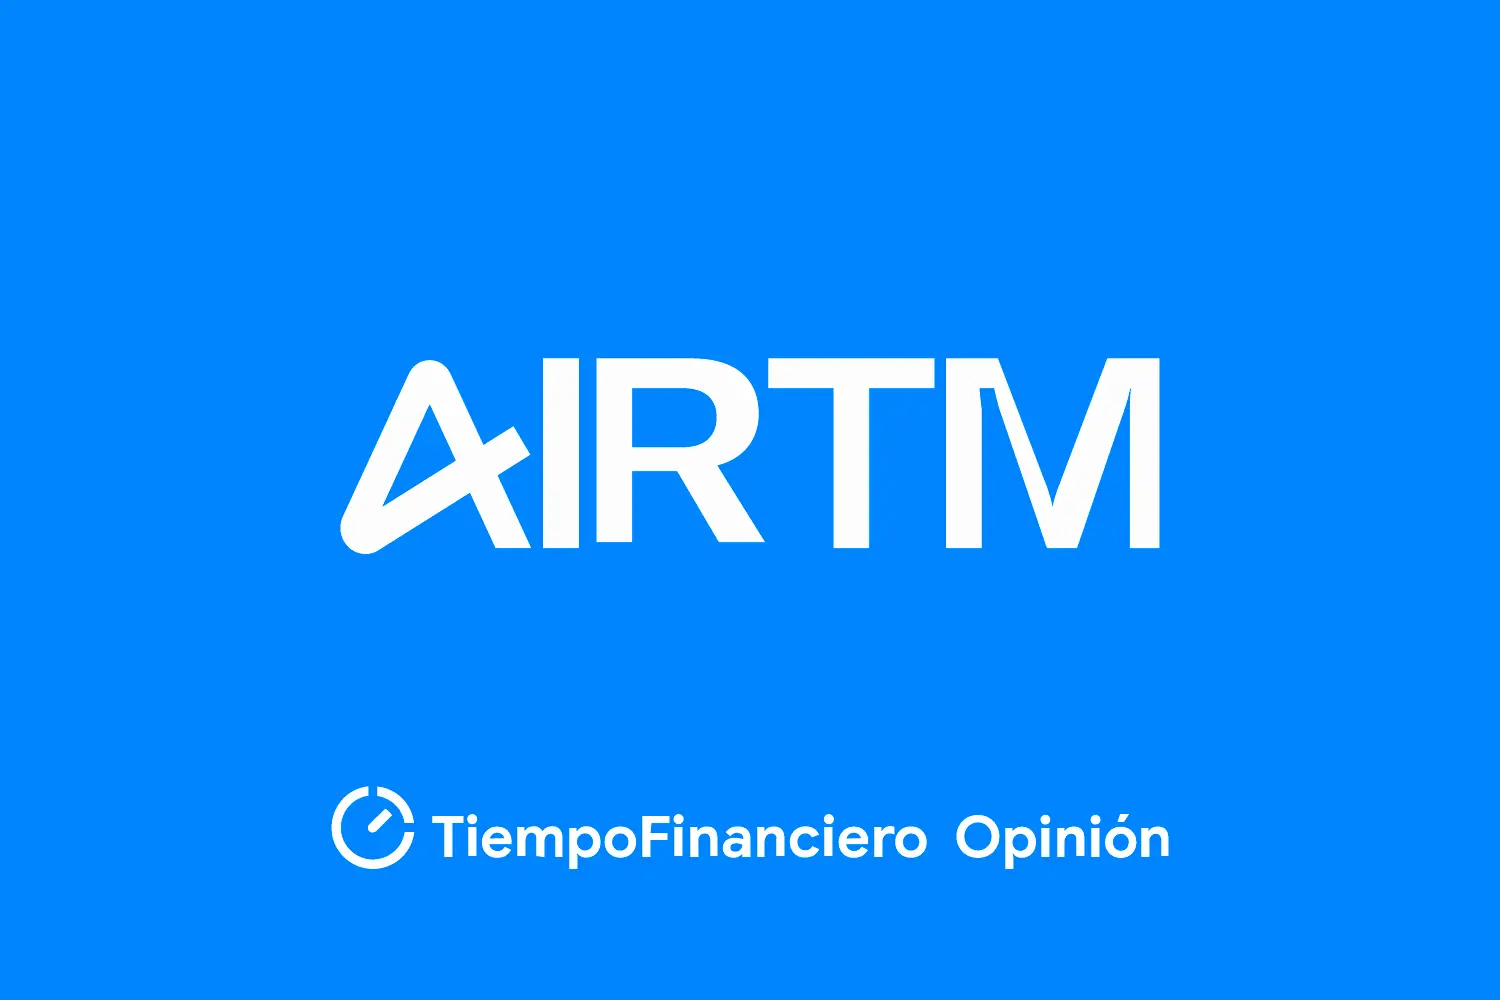 Imagen destacada del artículo Airtm Argentina opiniones: ¿es una buena propuesta?